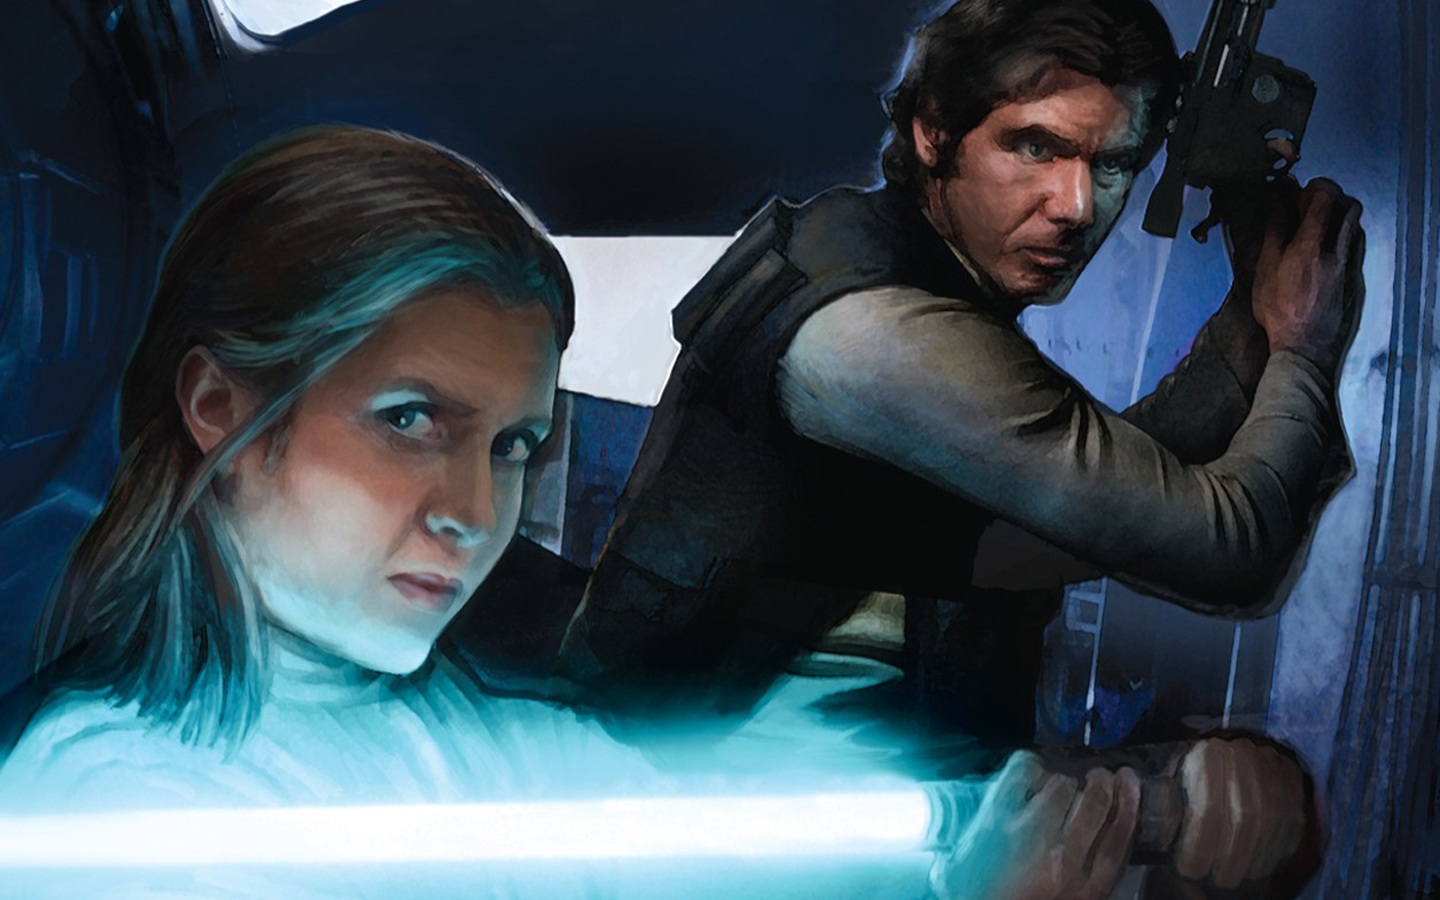 Star Wars Rebels Season 4 Wallpaper 1080p, Awesome - Star Wars Han Solo Fanart - HD Wallpaper 